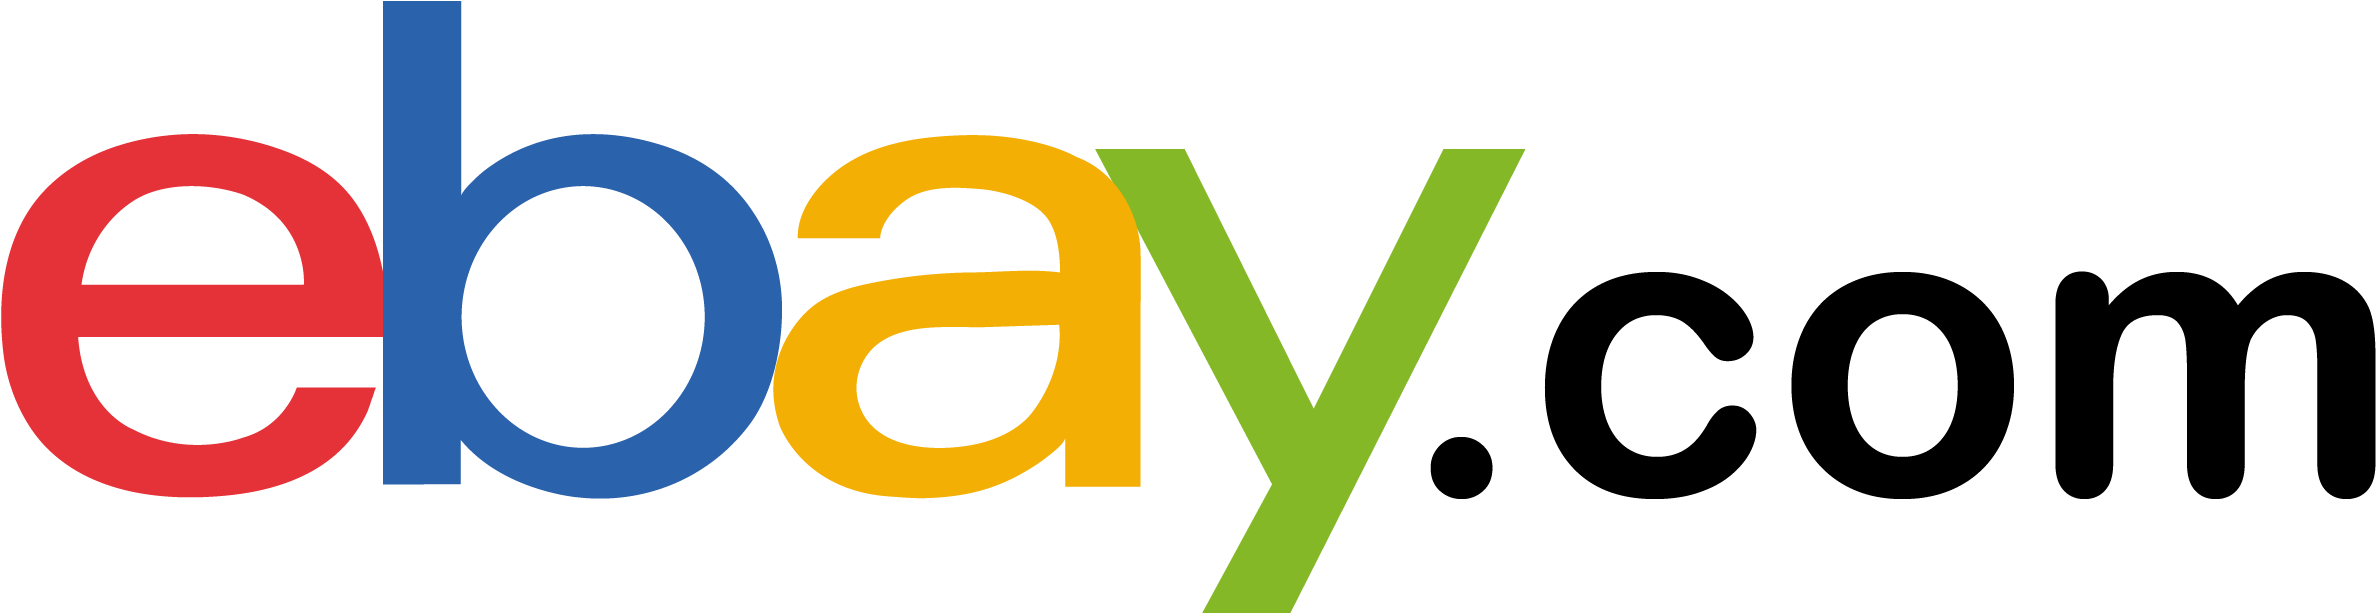 Ebay Logo PNG Transparent Image